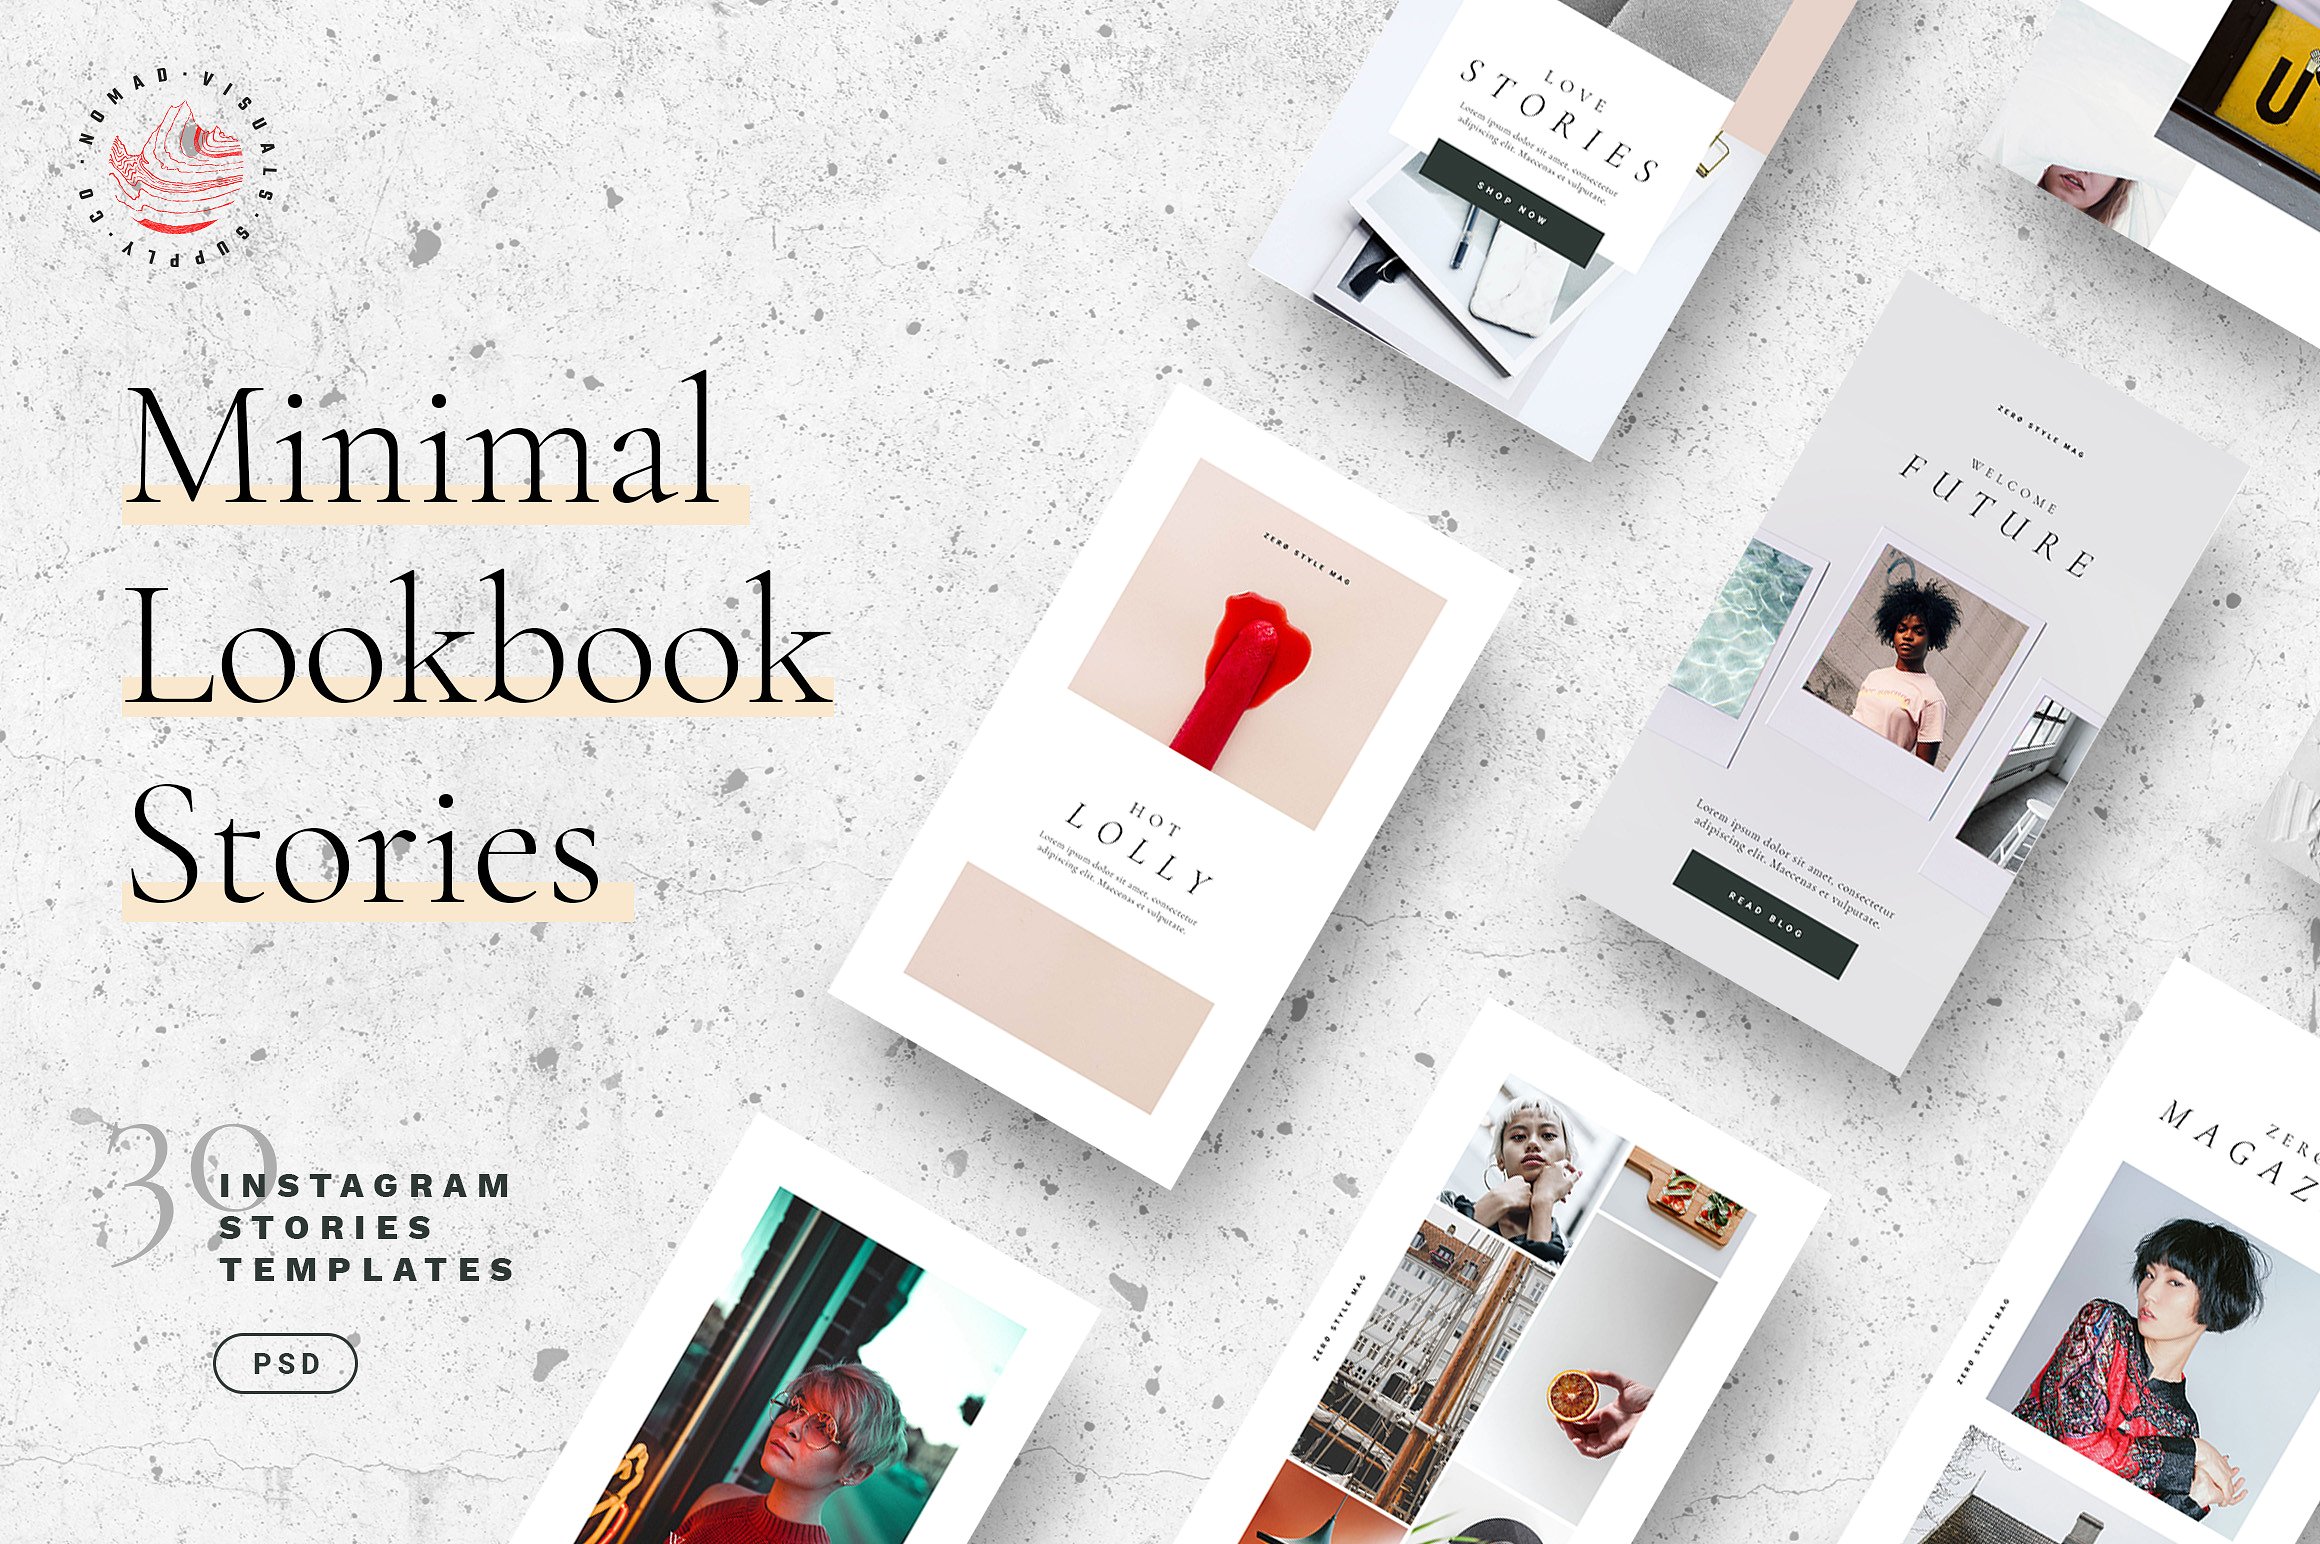 30个独特时尚的Lookbook社交媒体Instagram故事模板素材库精选 Minimal Lookbook Instagram Stories [psd]插图